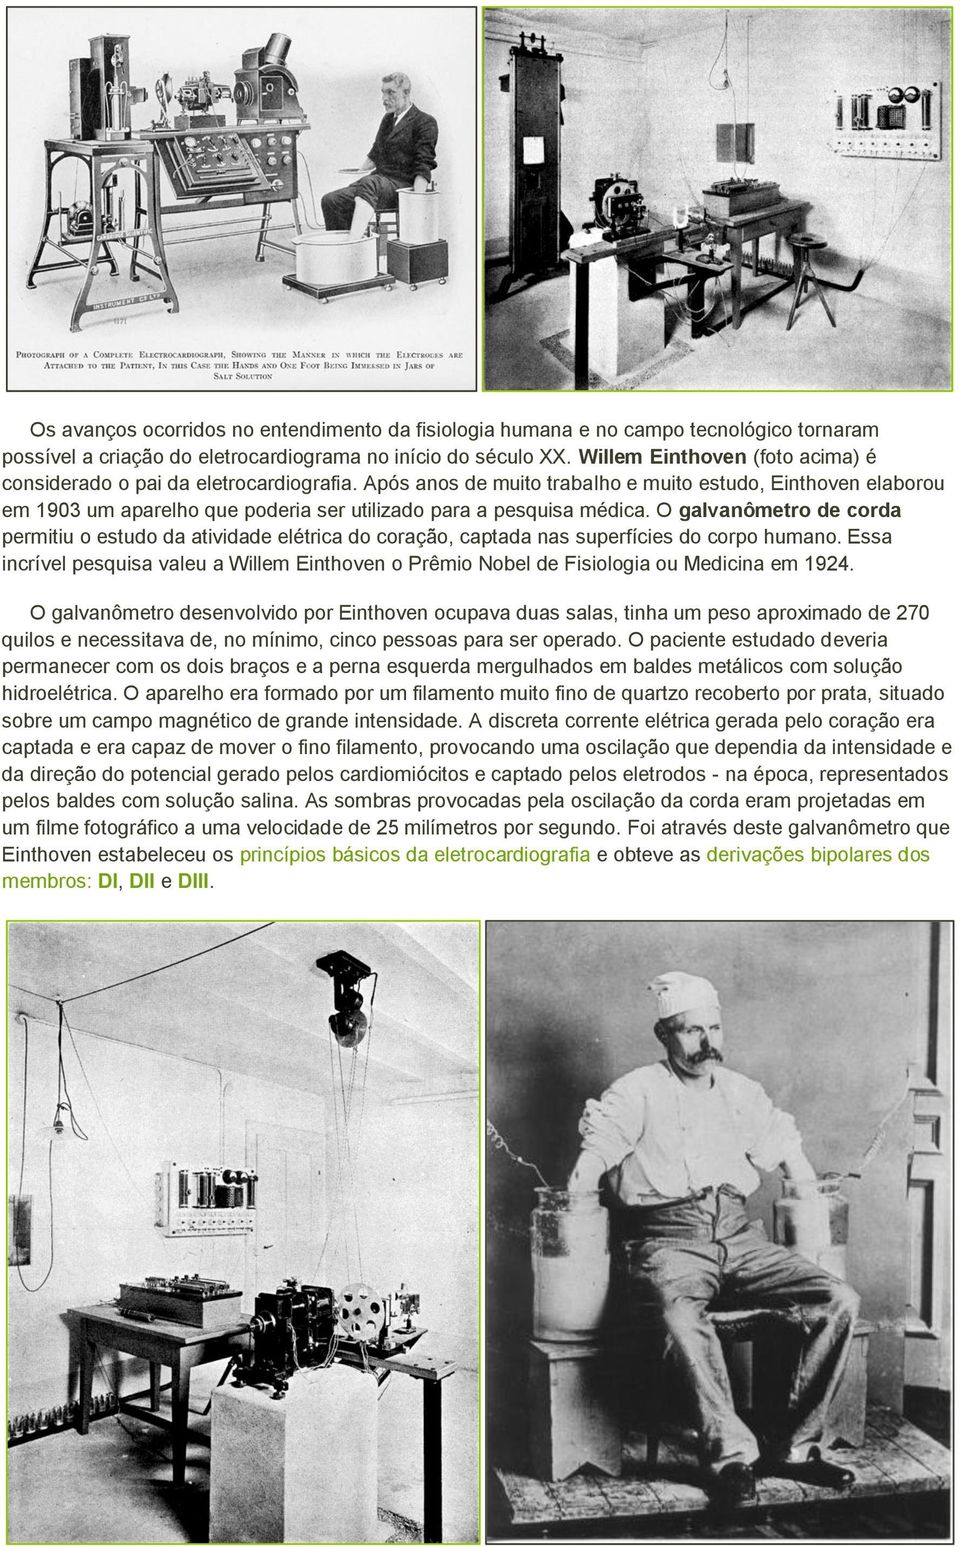 Após anos de muito trabalho e muito estudo, Einthoven elaborou em 1903 um aparelho que poderia ser utilizado para a pesquisa médica.